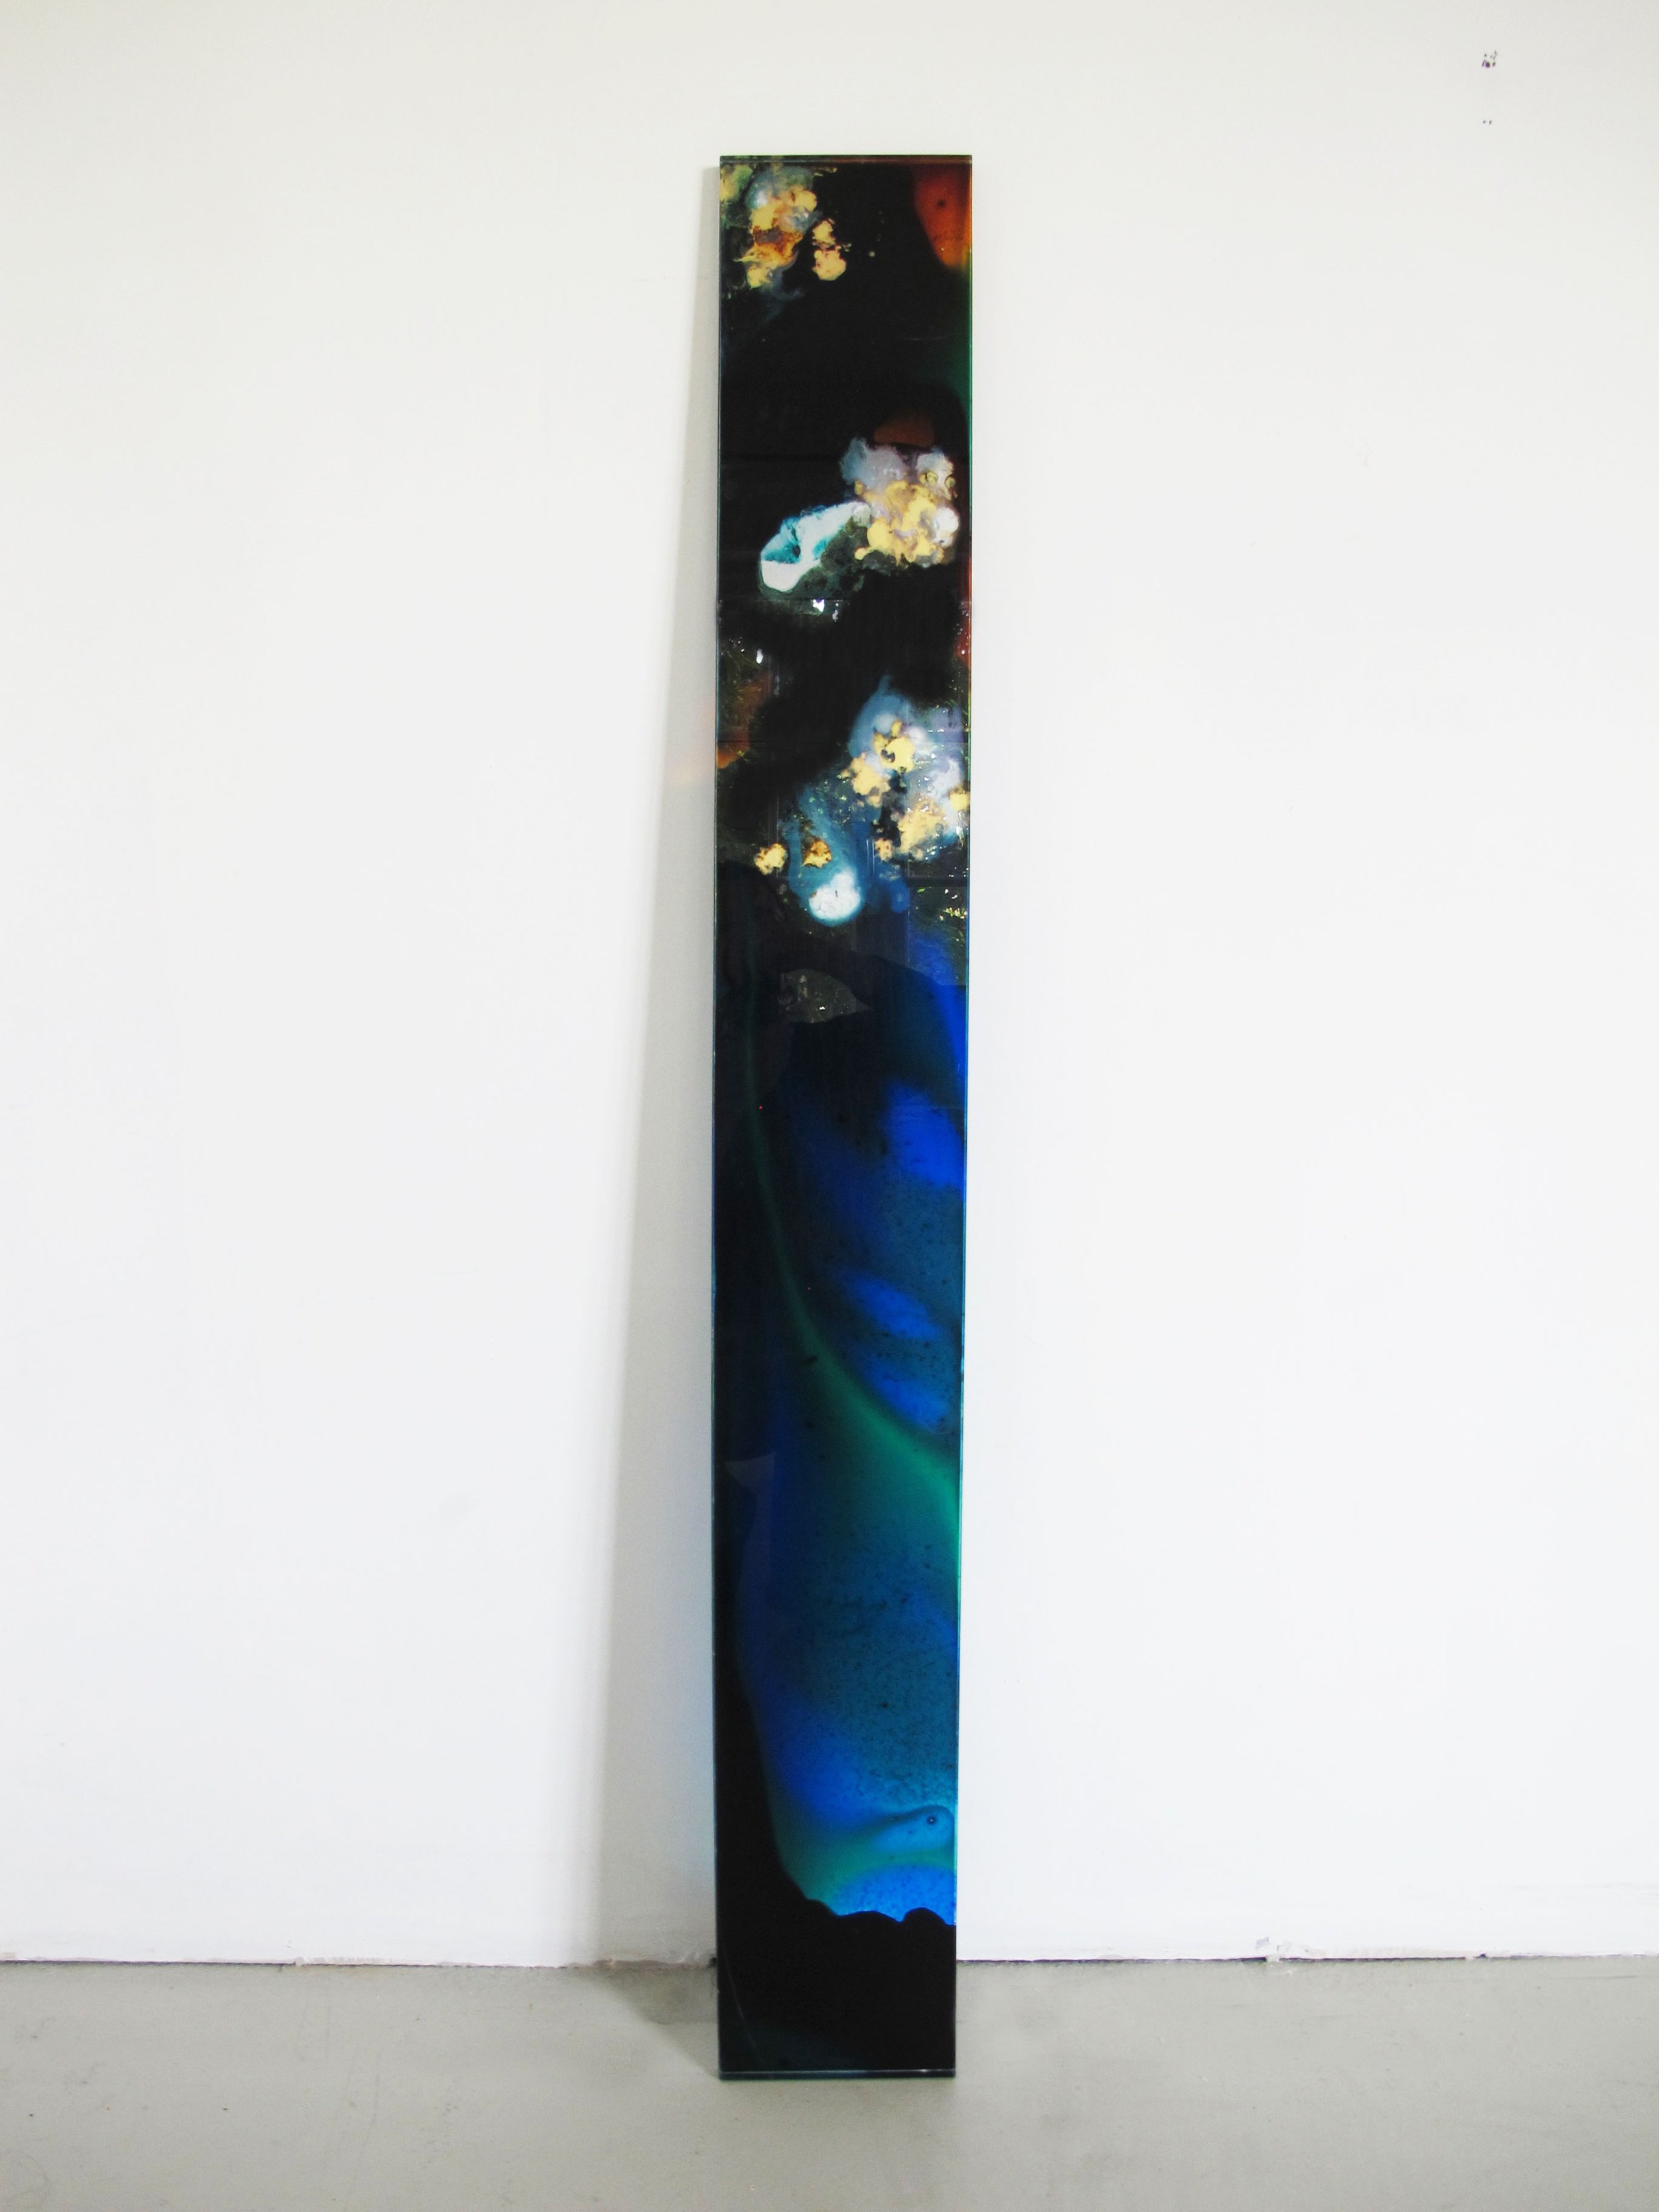  LIGNE ASTRALE II (2022) Peinture et techniques mixtes sur plexiglas 120 x 15 x 1,5 cm 900 euros 